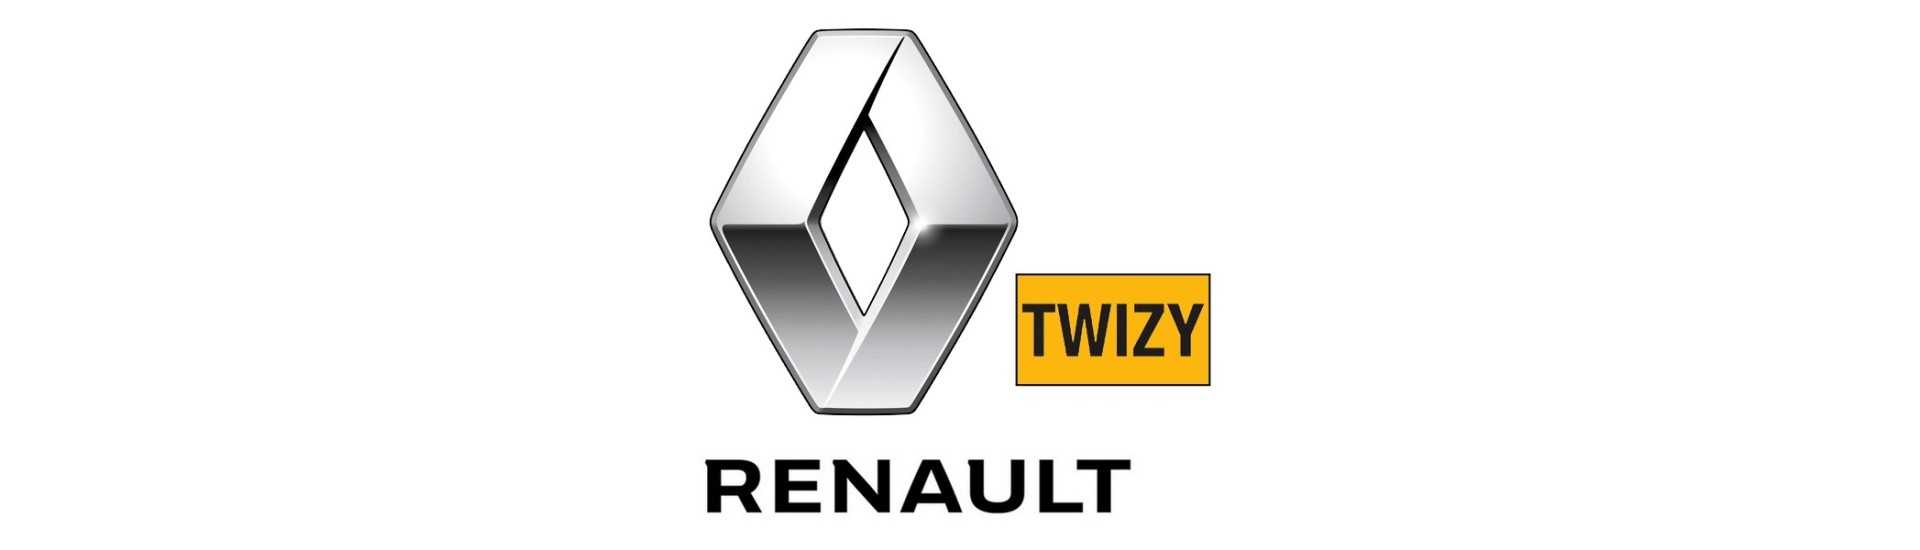 Sensore girevole al miglior prezzo senza permesso Renault Twizy